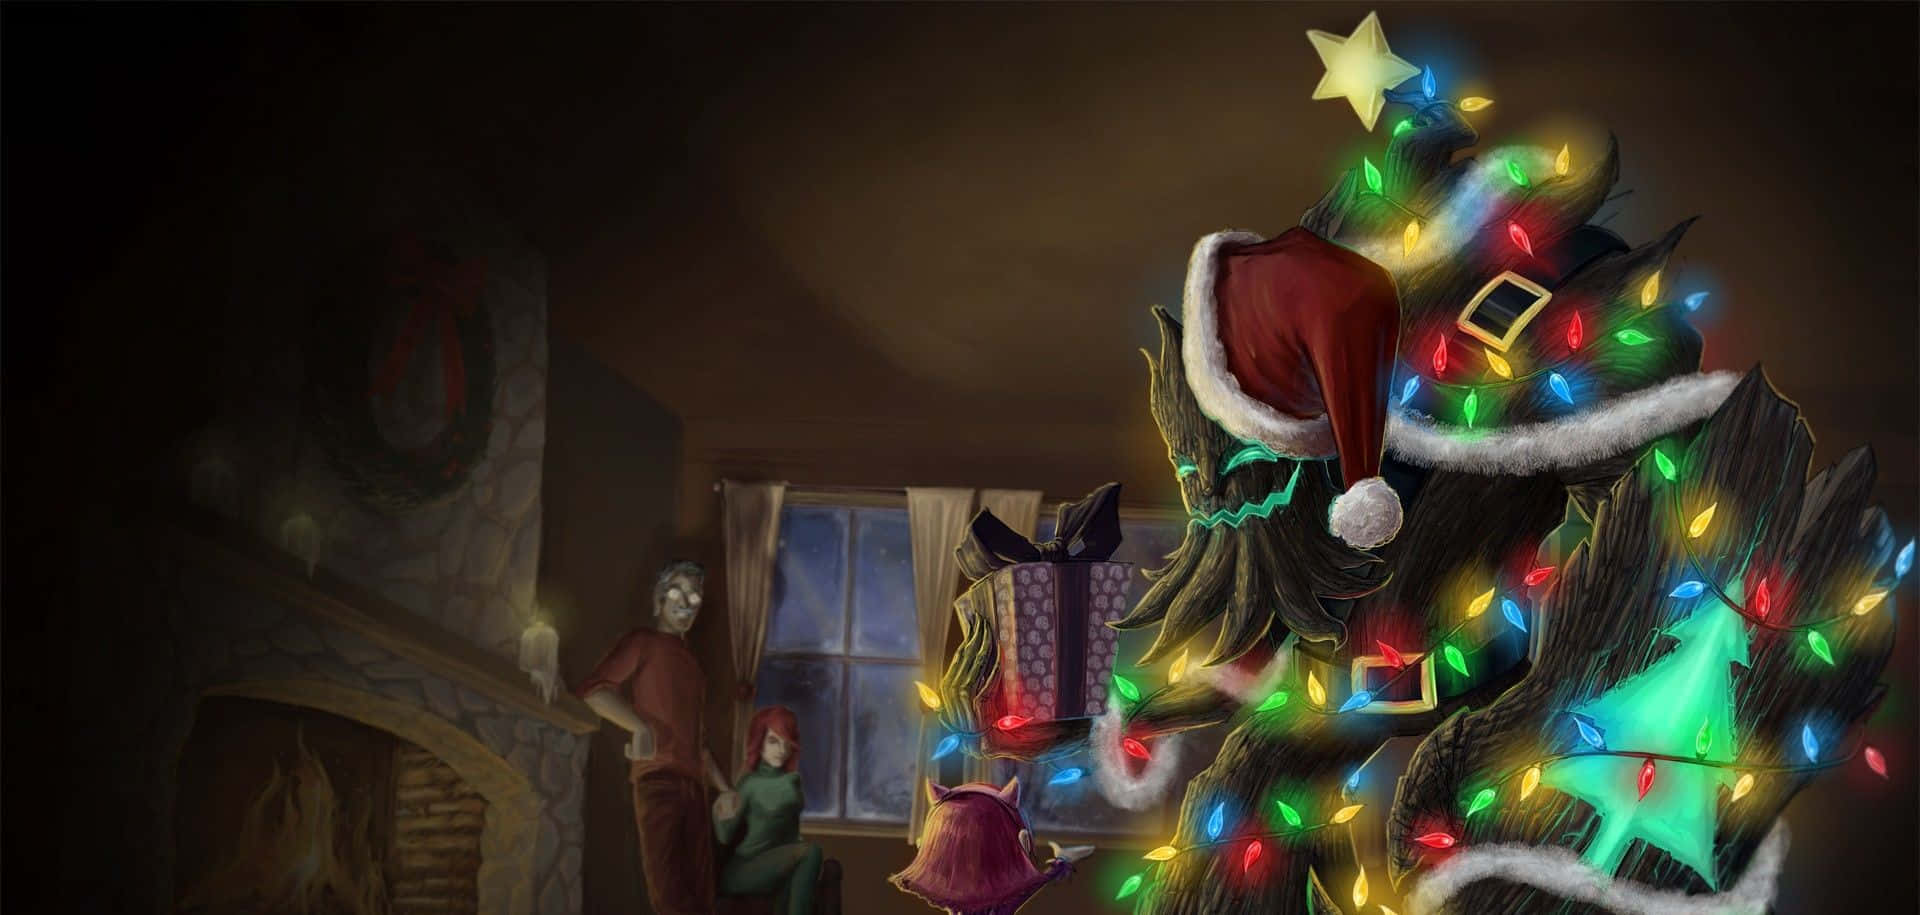 Enchanting Dark Christmas Scene Wallpaper